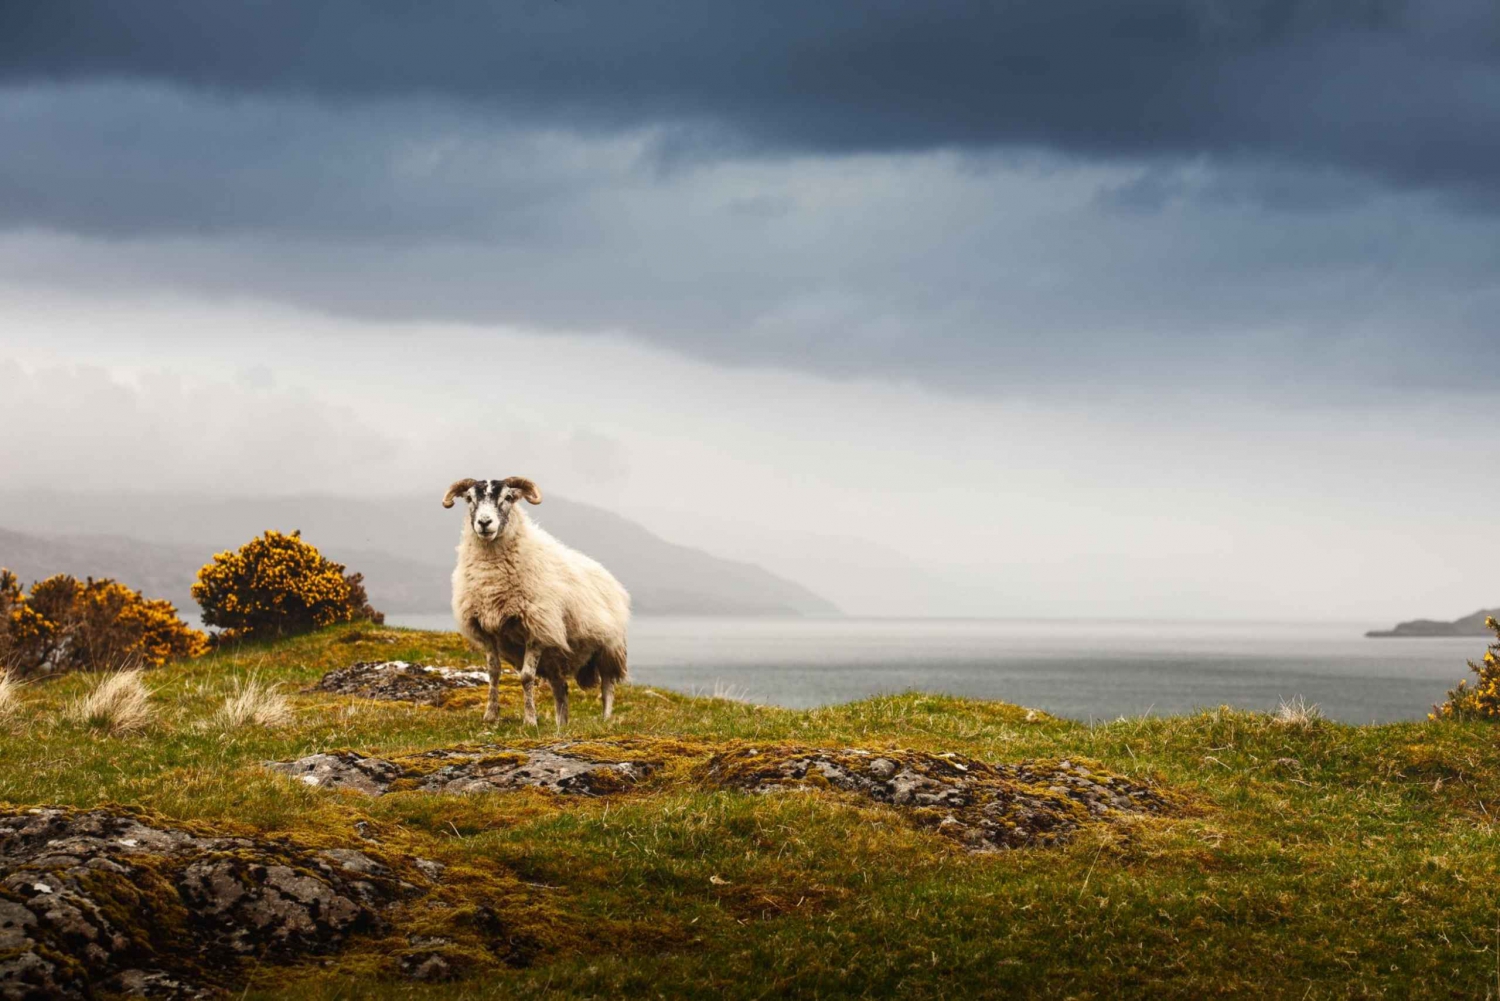 Iona, Mull e l'Isola di Skye: tour di 5 giorni da Edimburgo